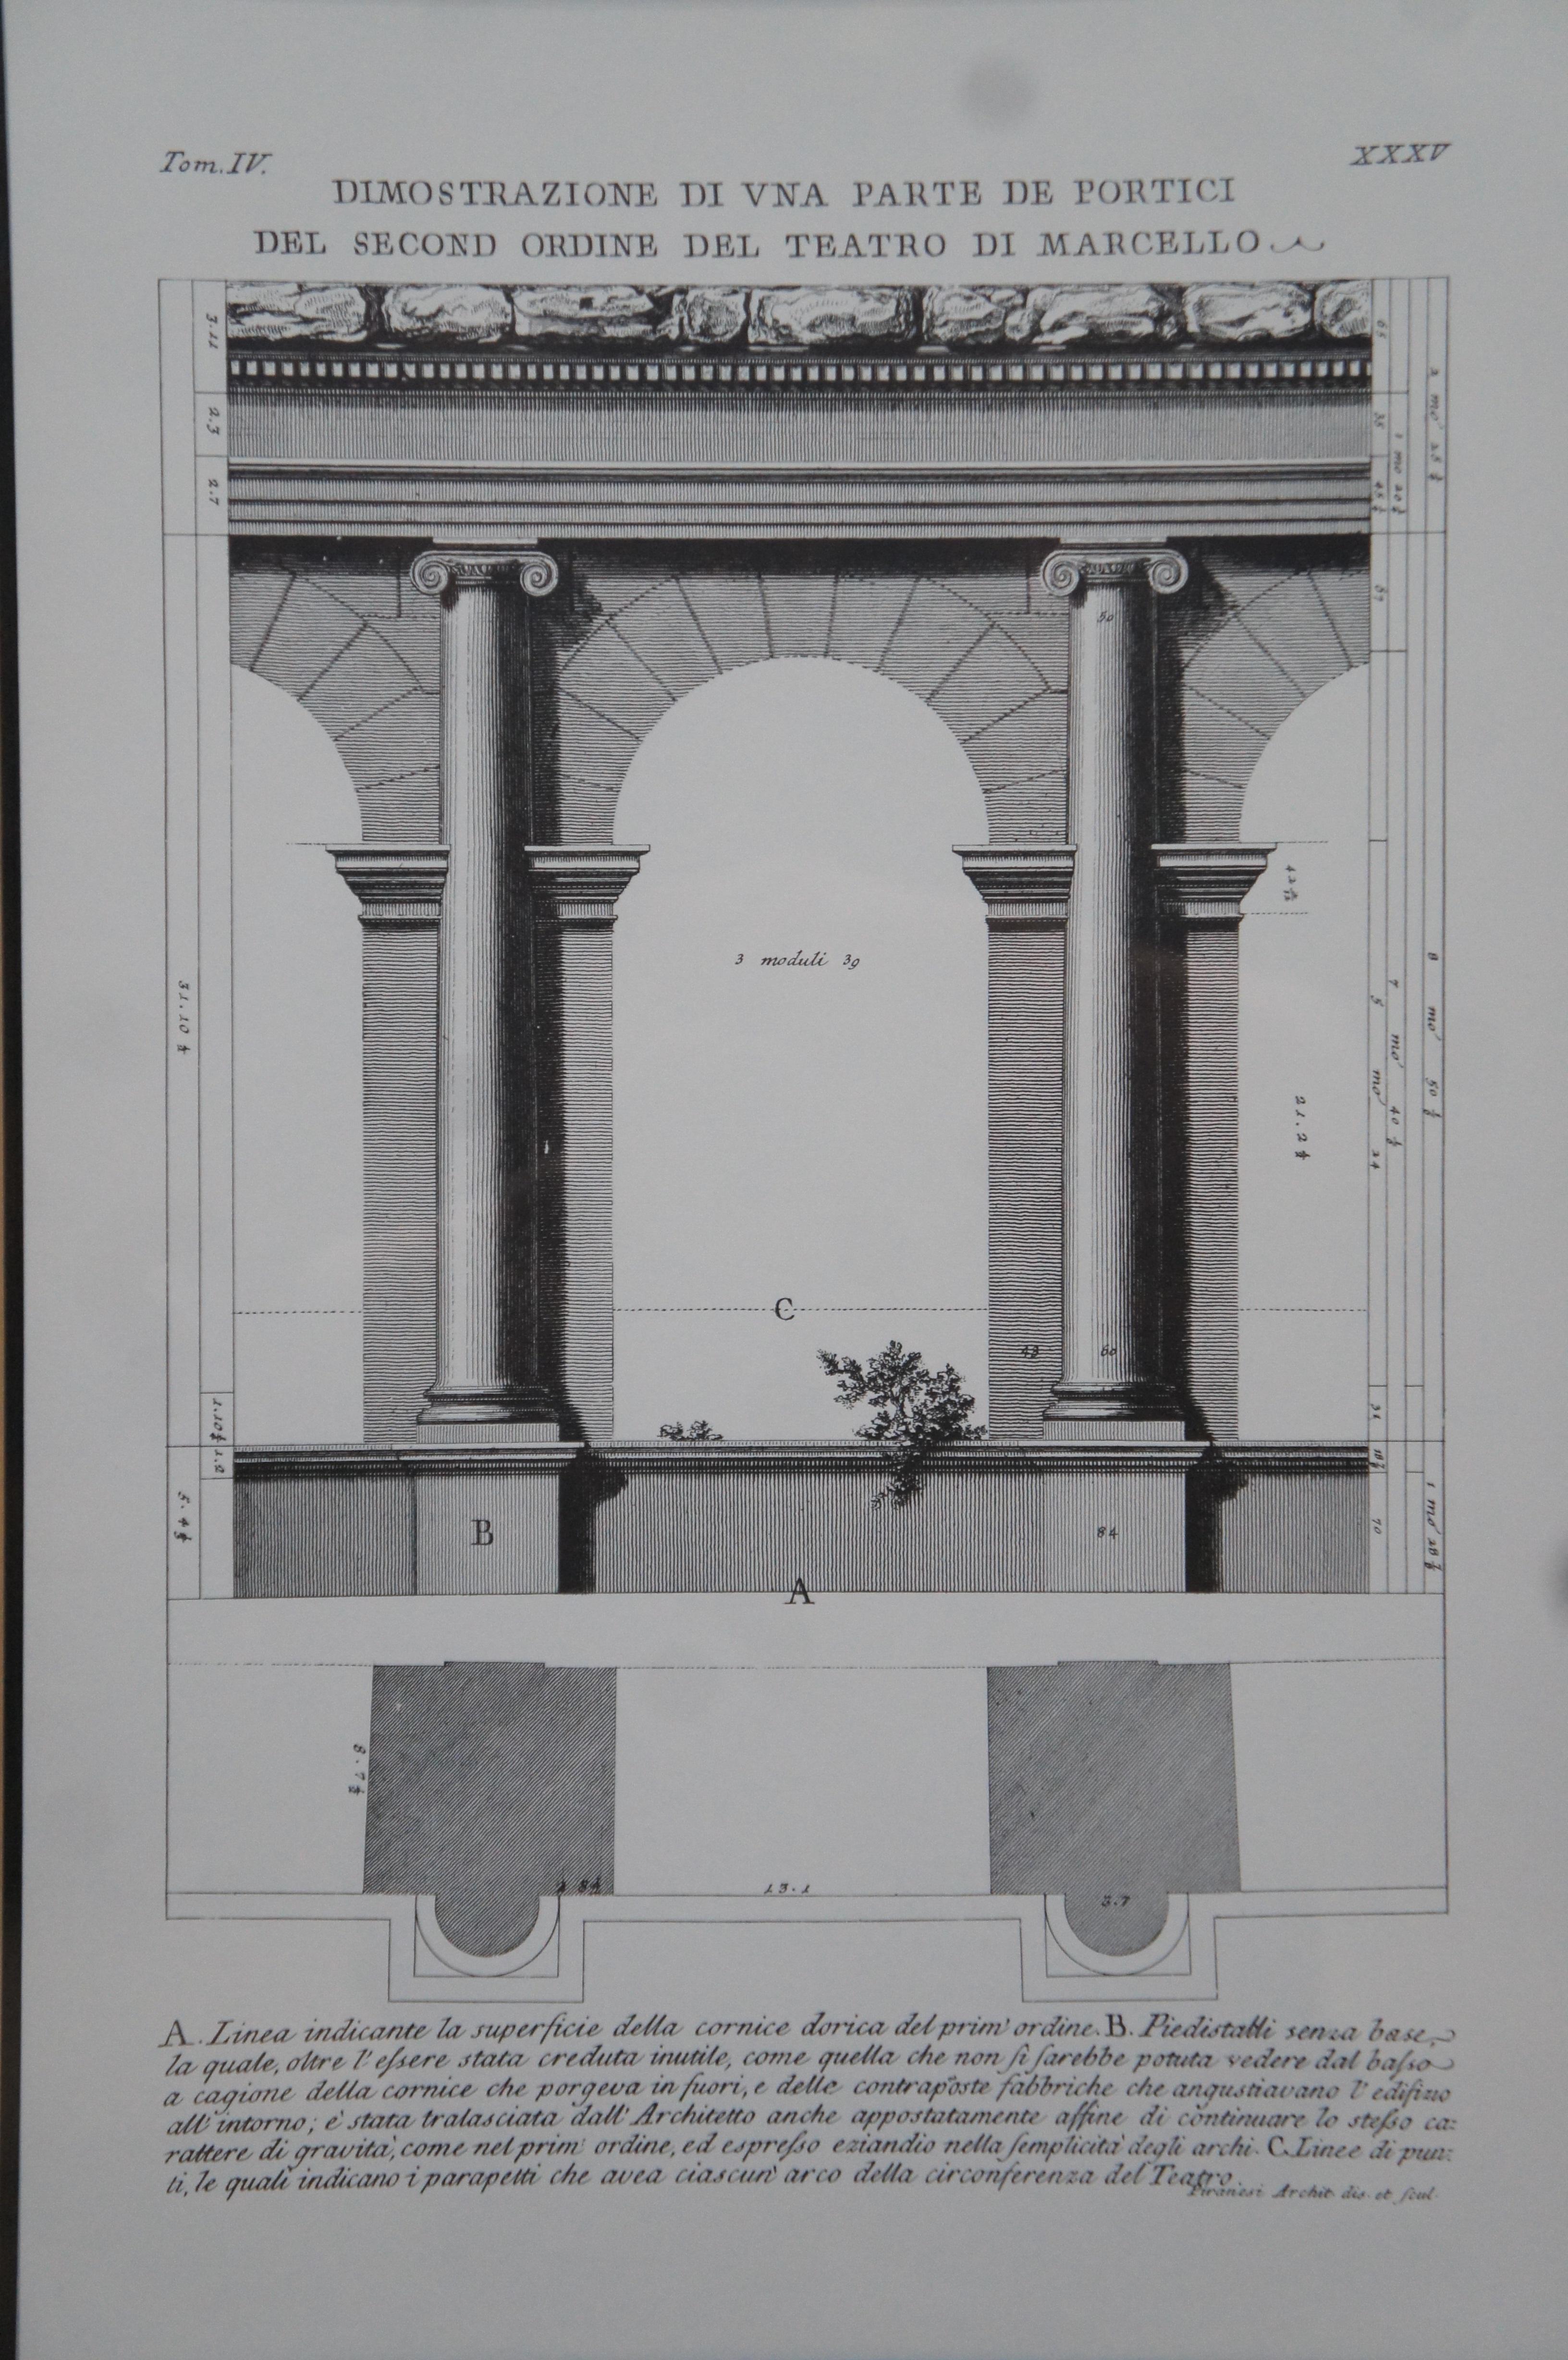 2 Giovanni Battista Piranesi Reproduction Roman Architecture Prints 1